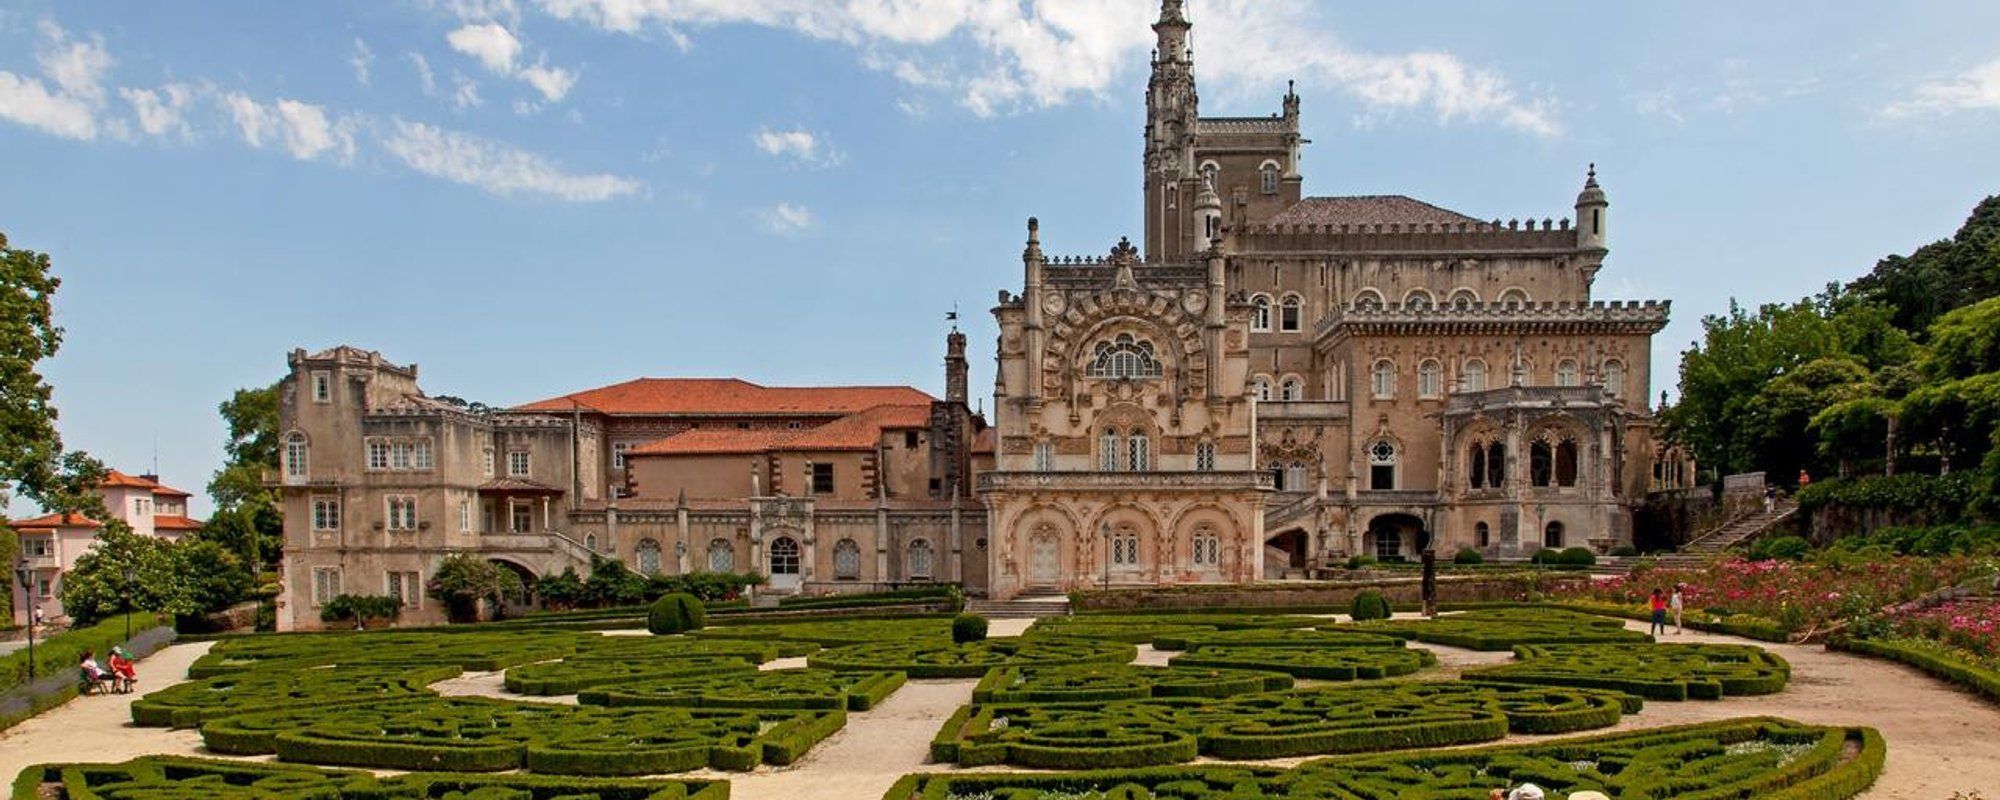 Portuguese Palaces - Palace Hotel do Bussaco